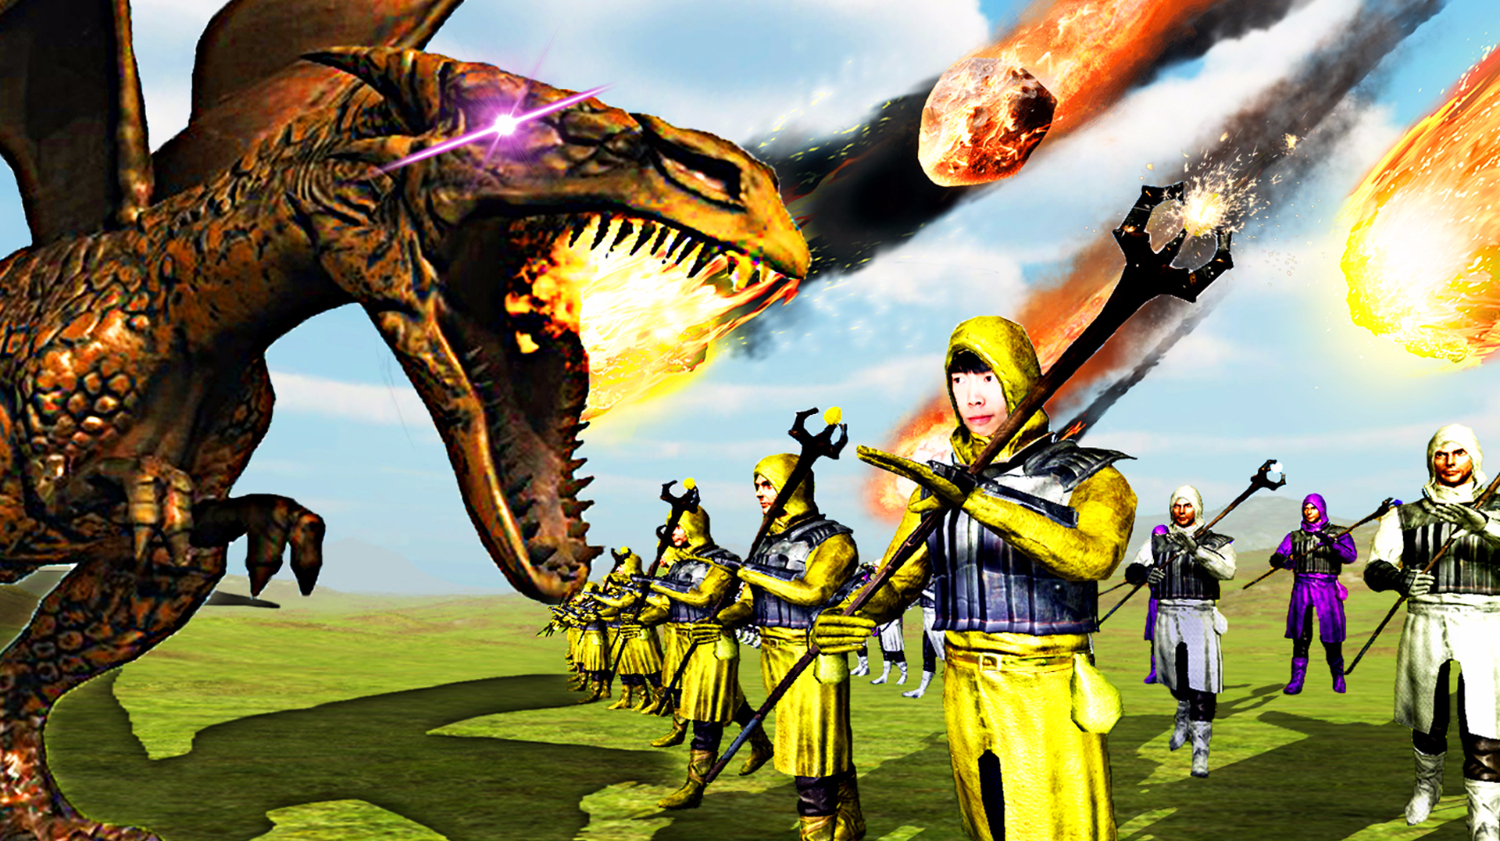 「屌德斯解说」野兽战争模拟器 全新魔法师和巨型喷火龙登场！